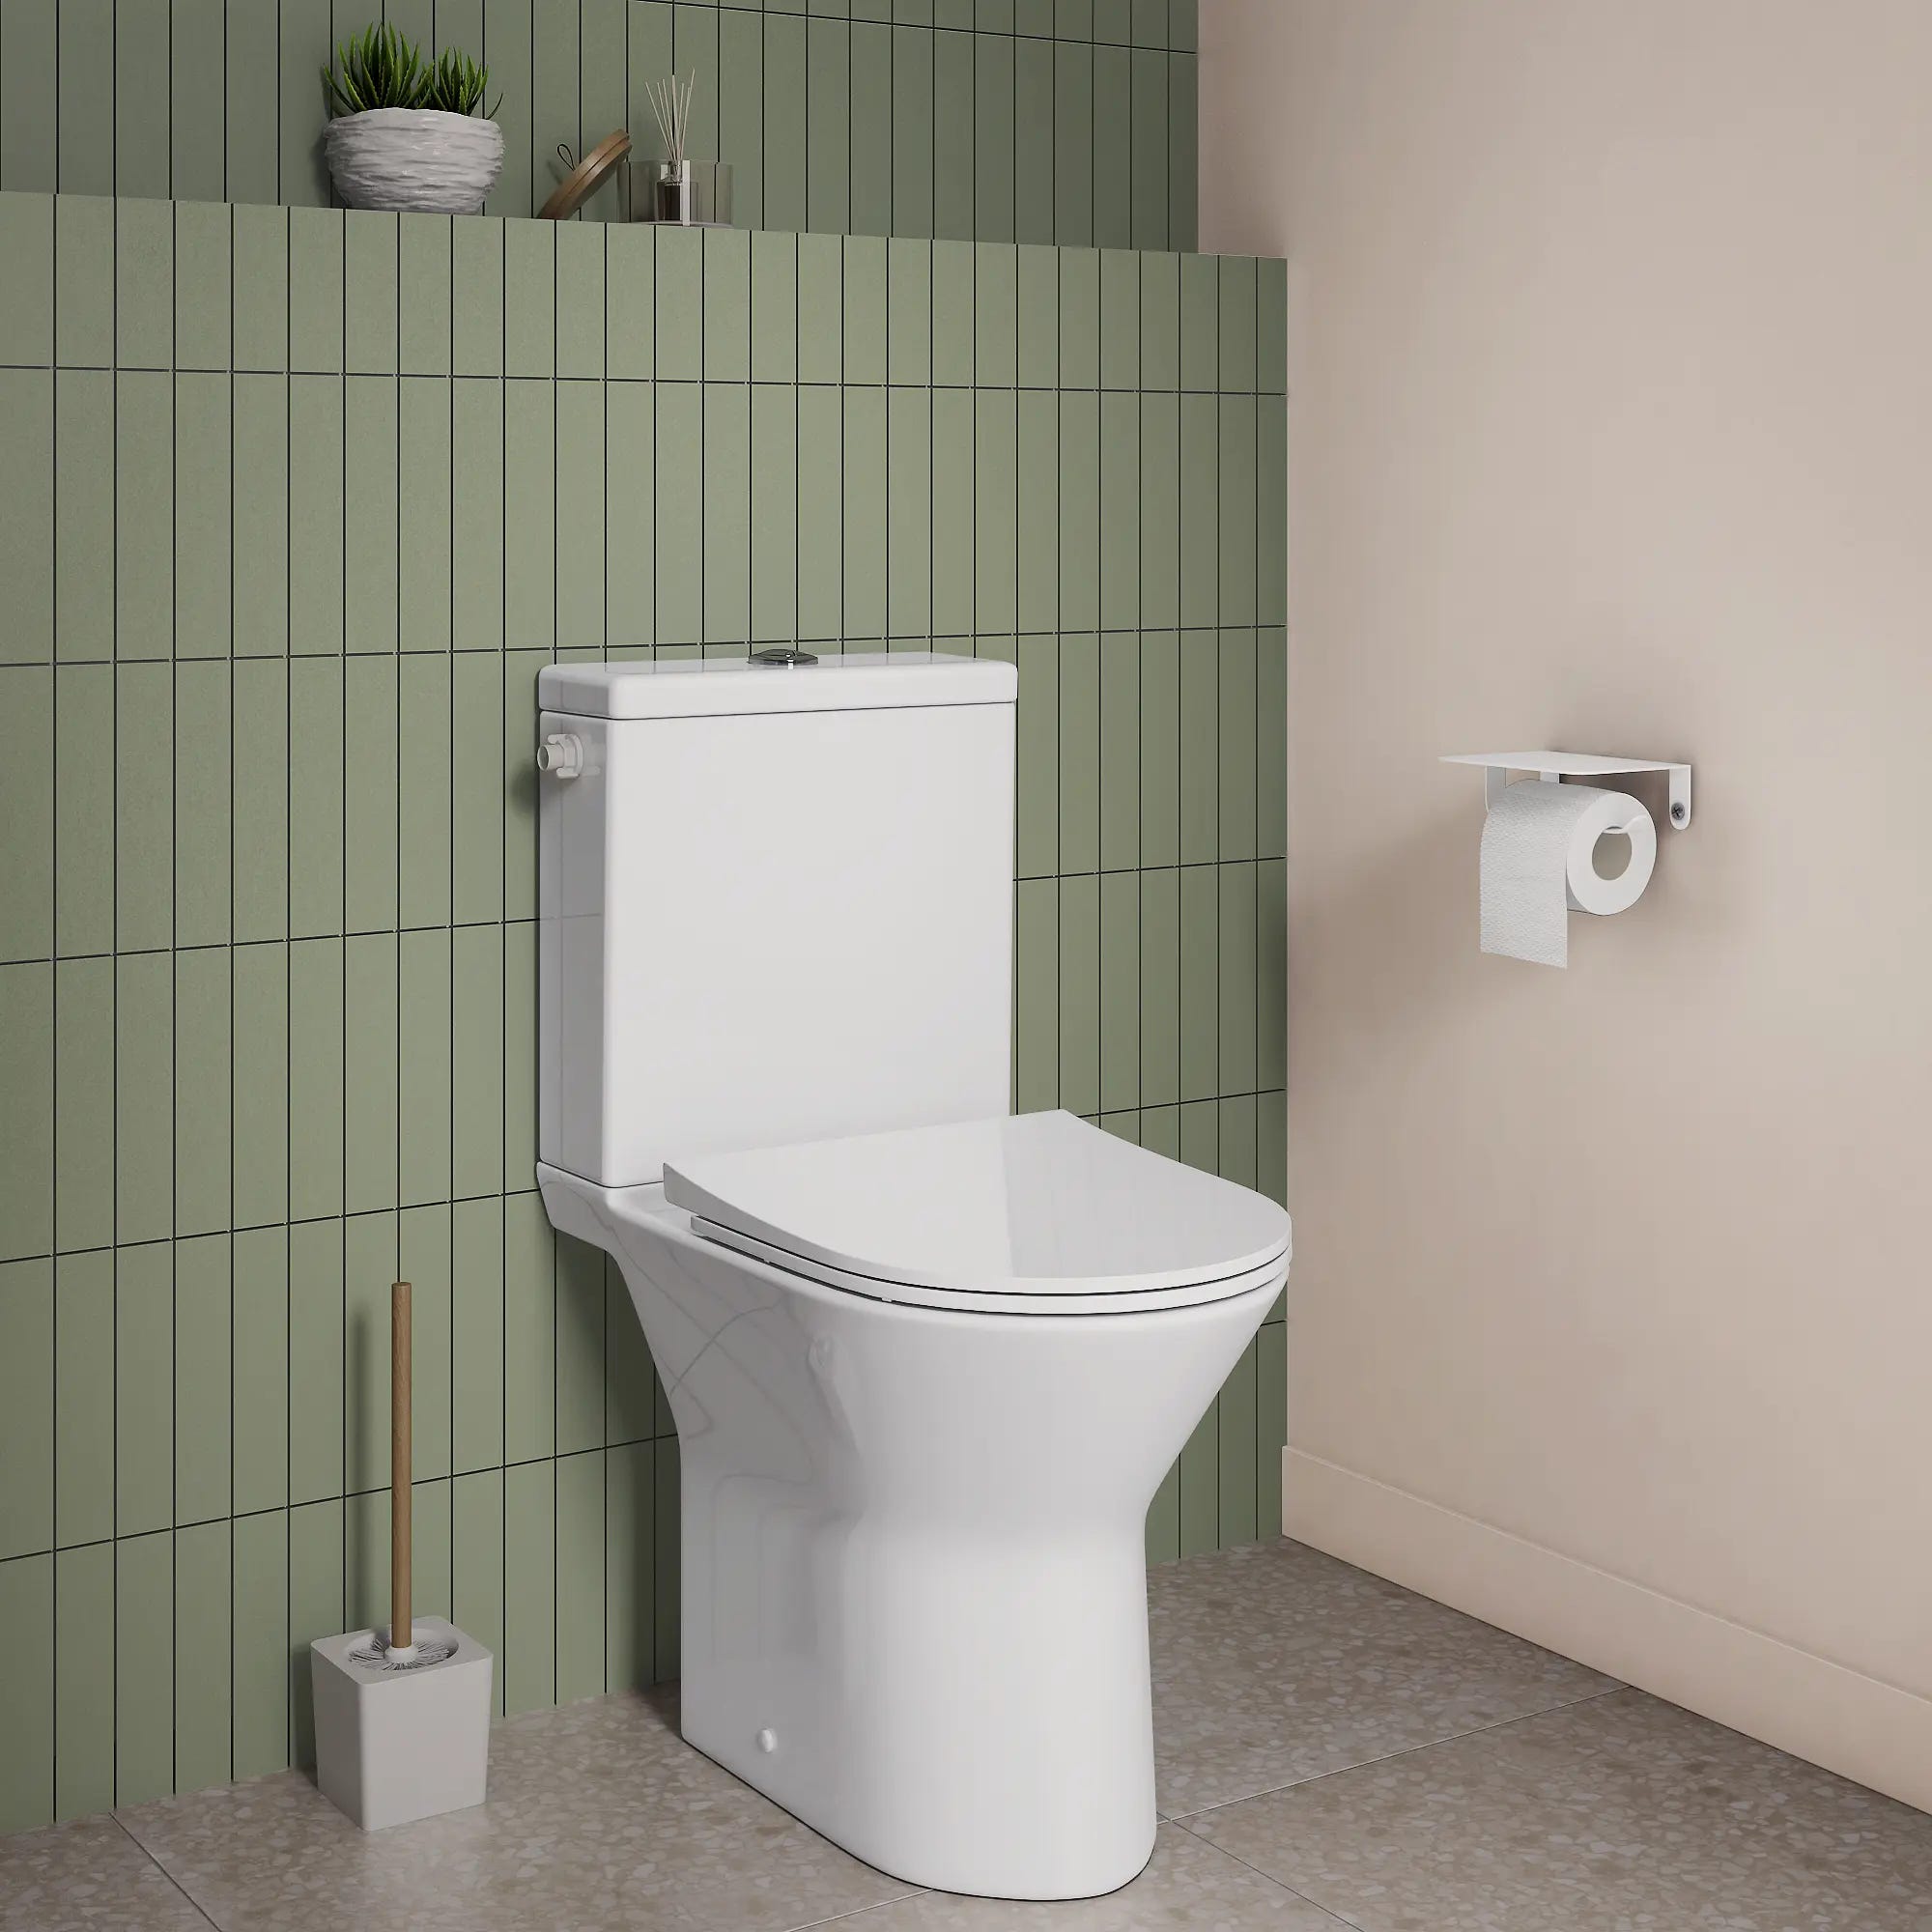 11 solutions pour cacher les toilettes dans la salle de bains